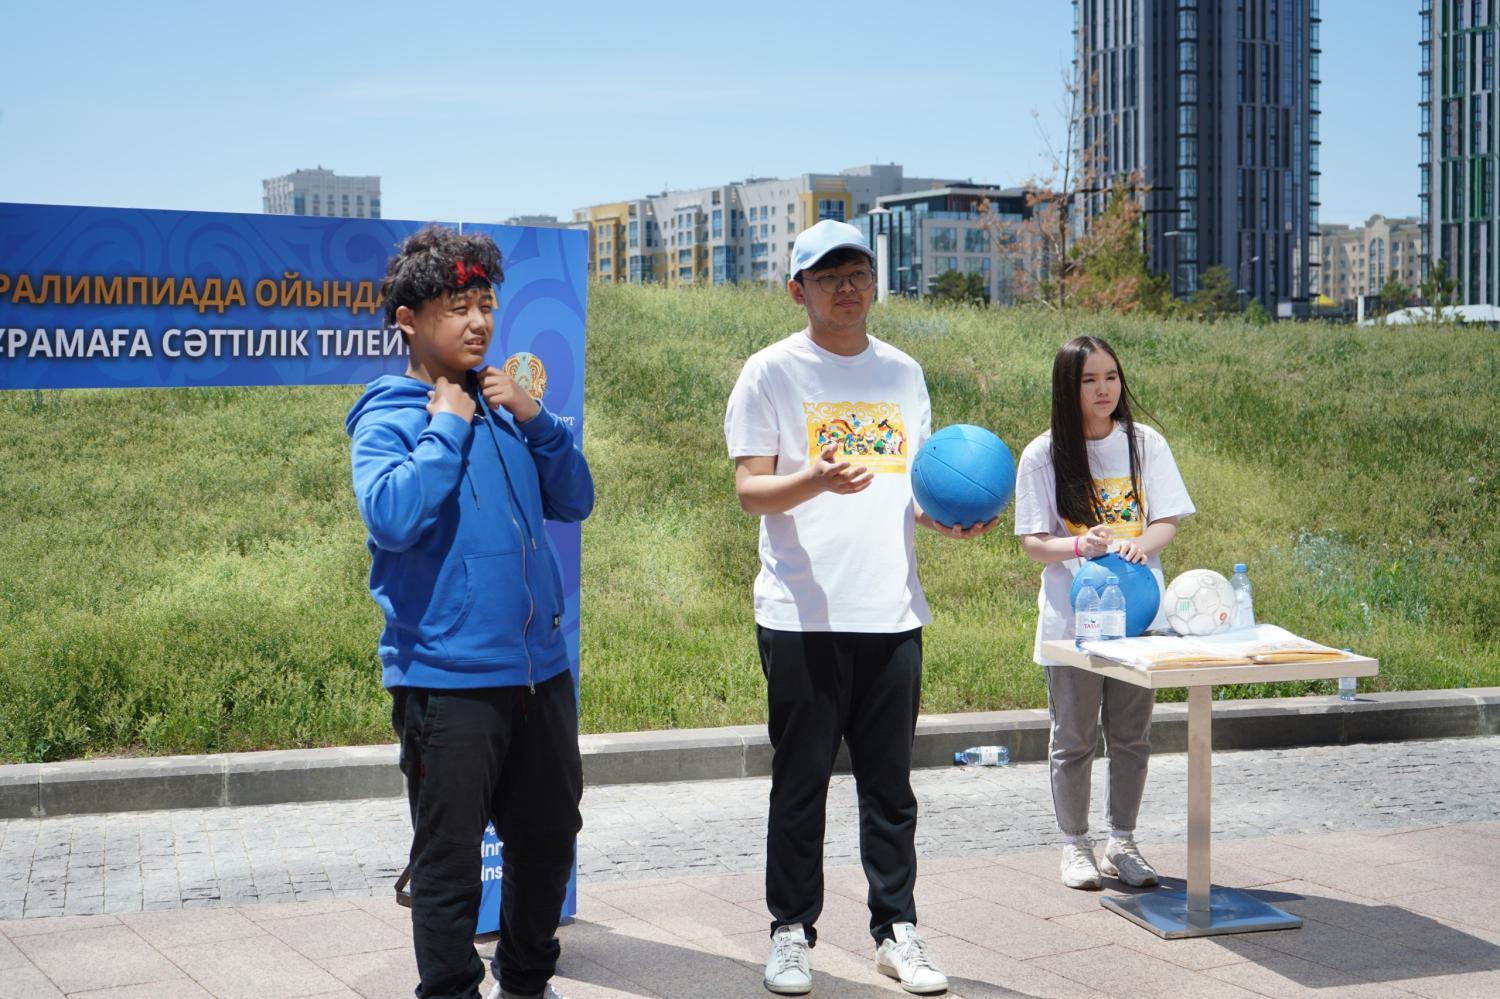 Қозғалыстағы әлем: Астанада спортшыларды қолдауға арналған іс-шара өтті